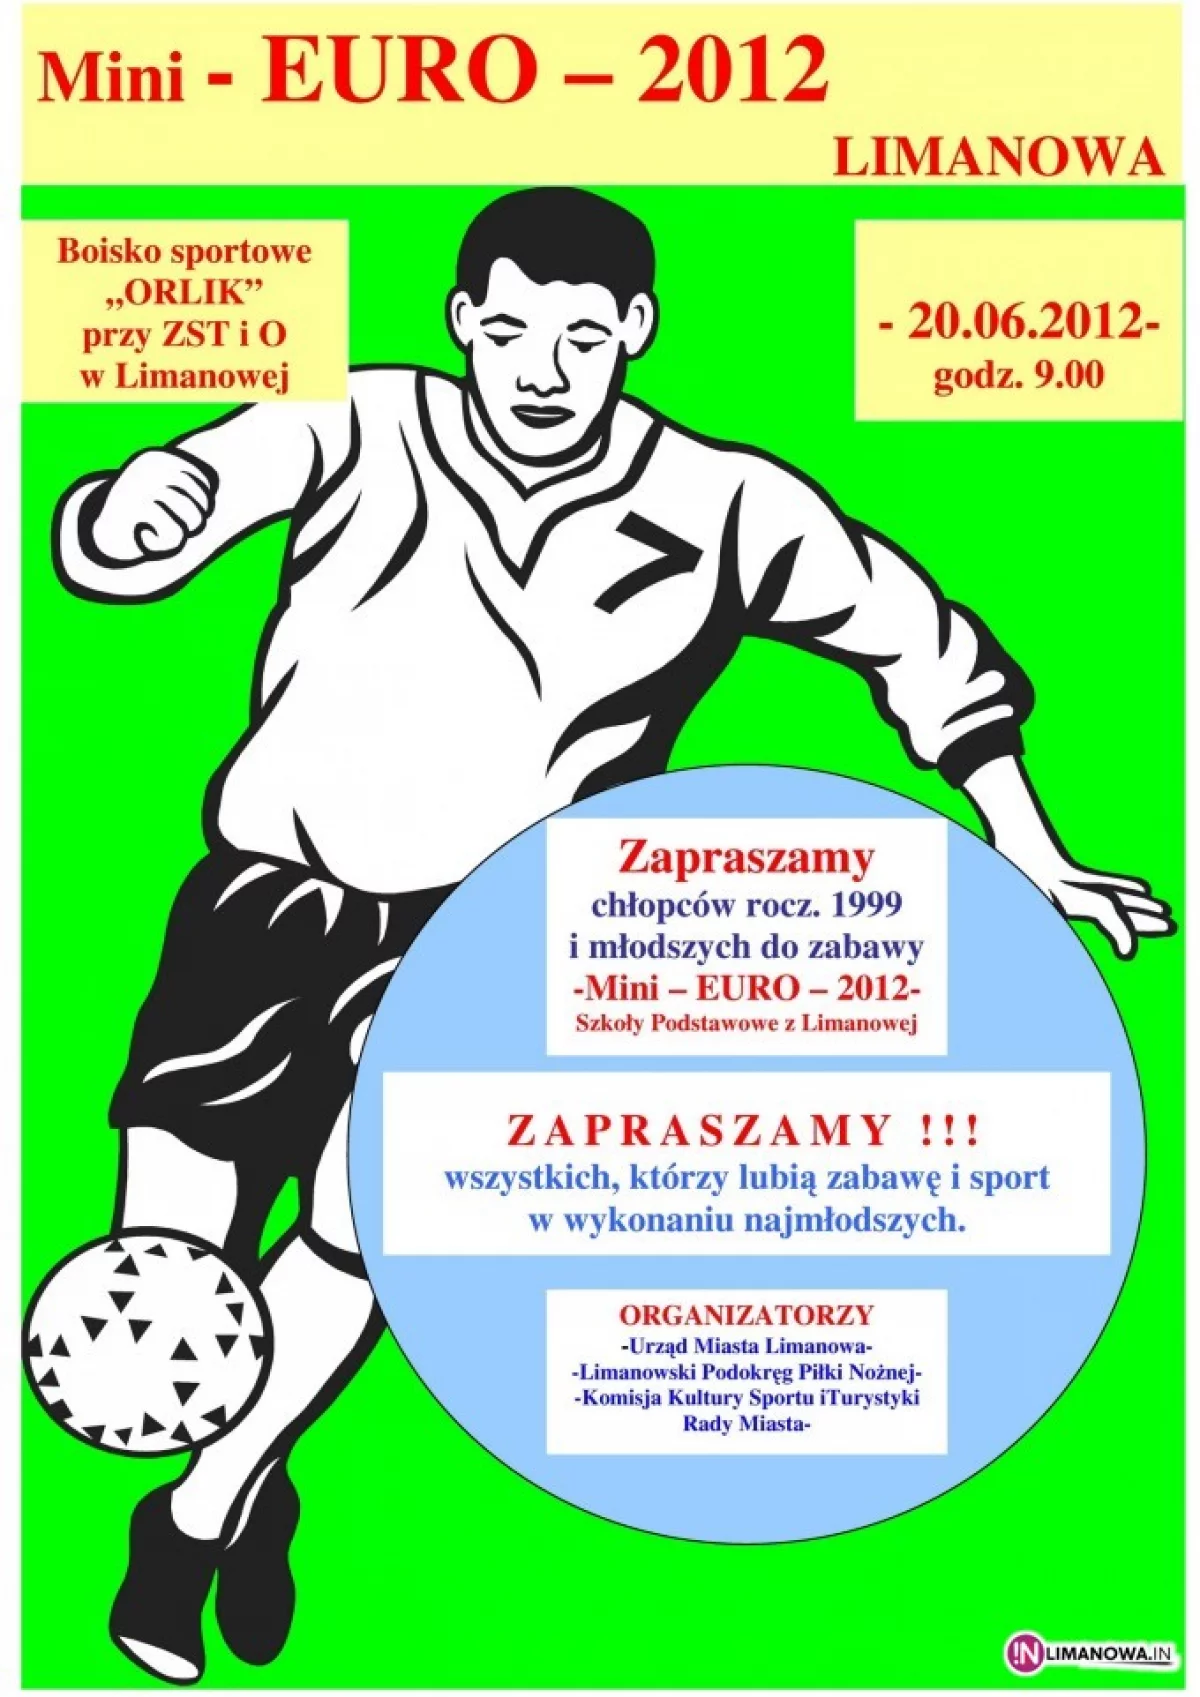 EURO-2012: w środę poznamy finalistę ME w Limanowej!